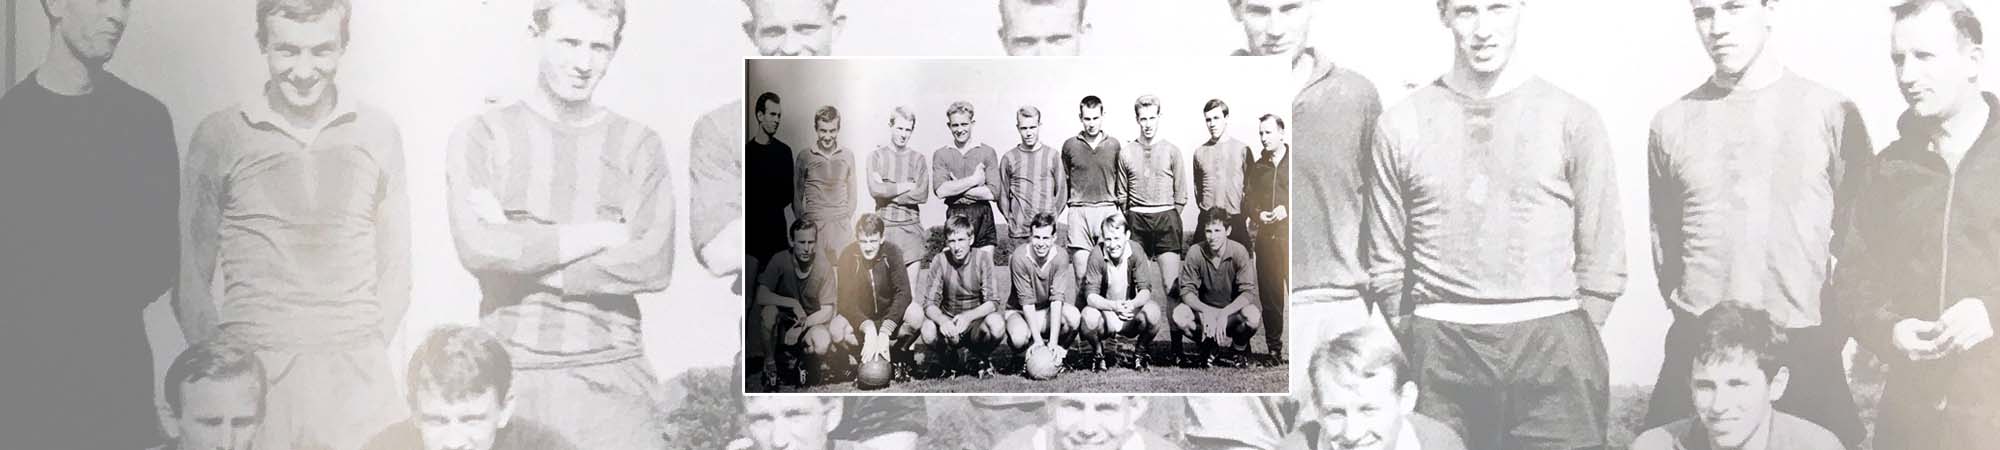 FC Twente seizoen 1966/1967